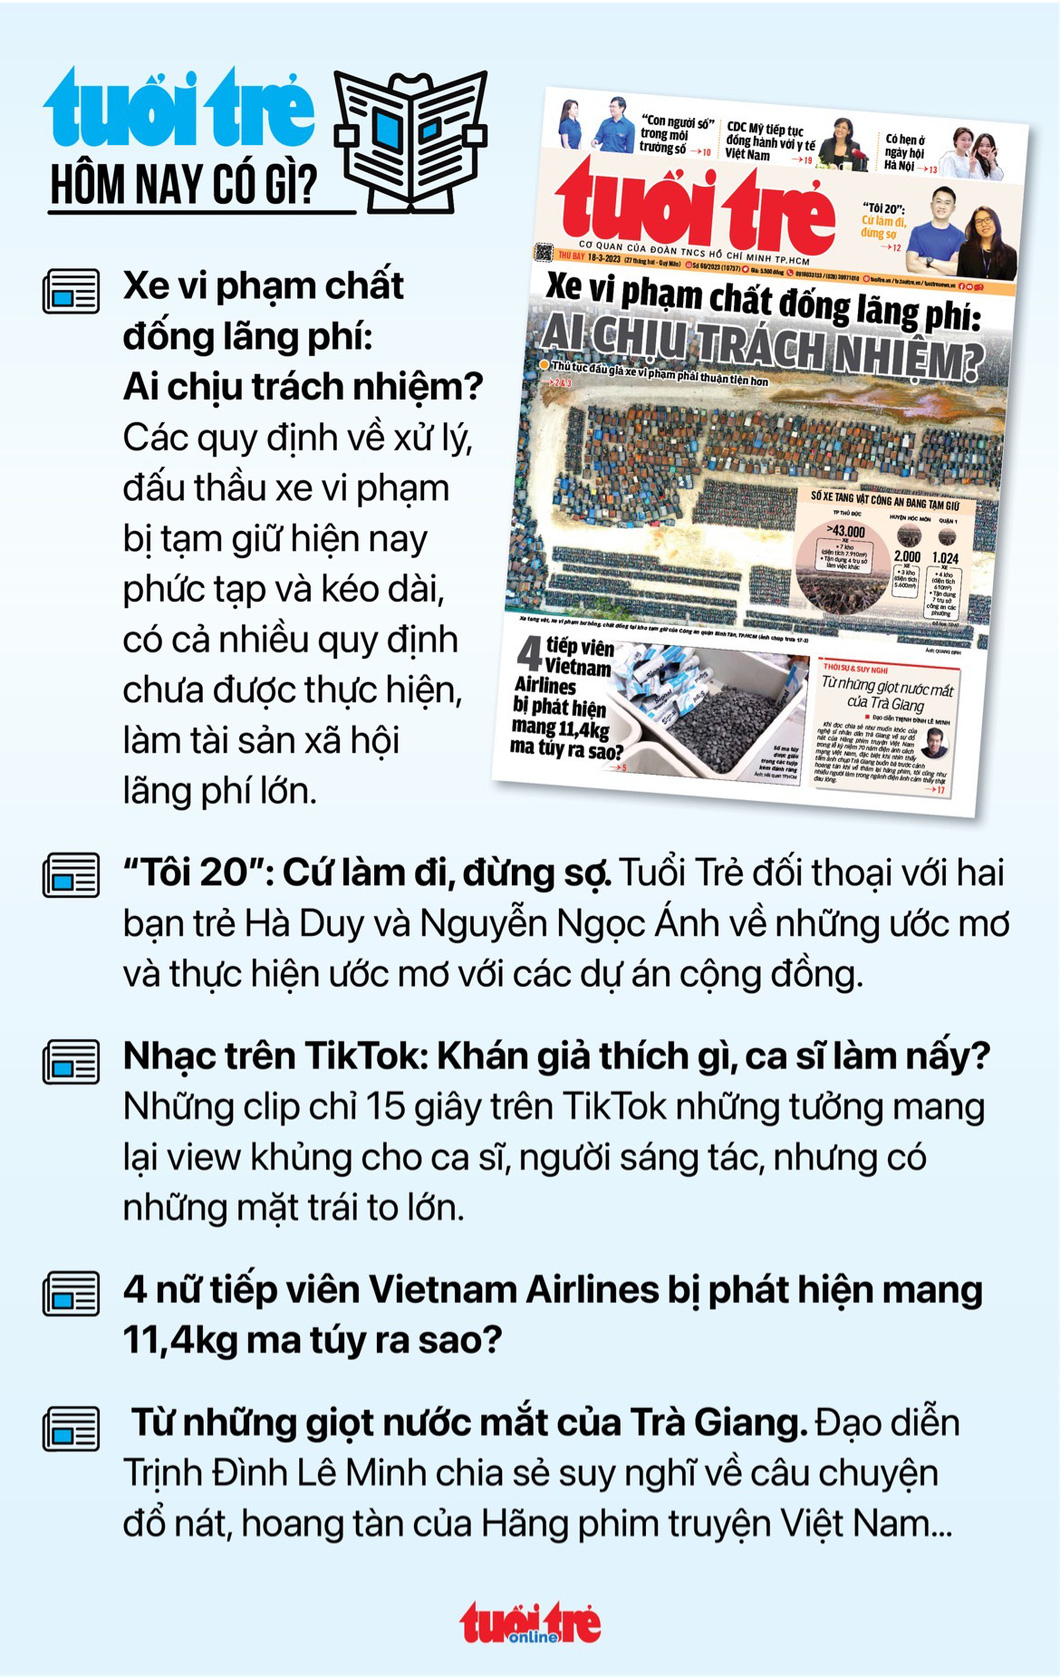 Tin tức sáng 18-3: Sẽ ban hành quy tắc đạo đức công vụ; gần 3.000 người nước ngoài mua nhà Việt Nam - Ảnh 3.